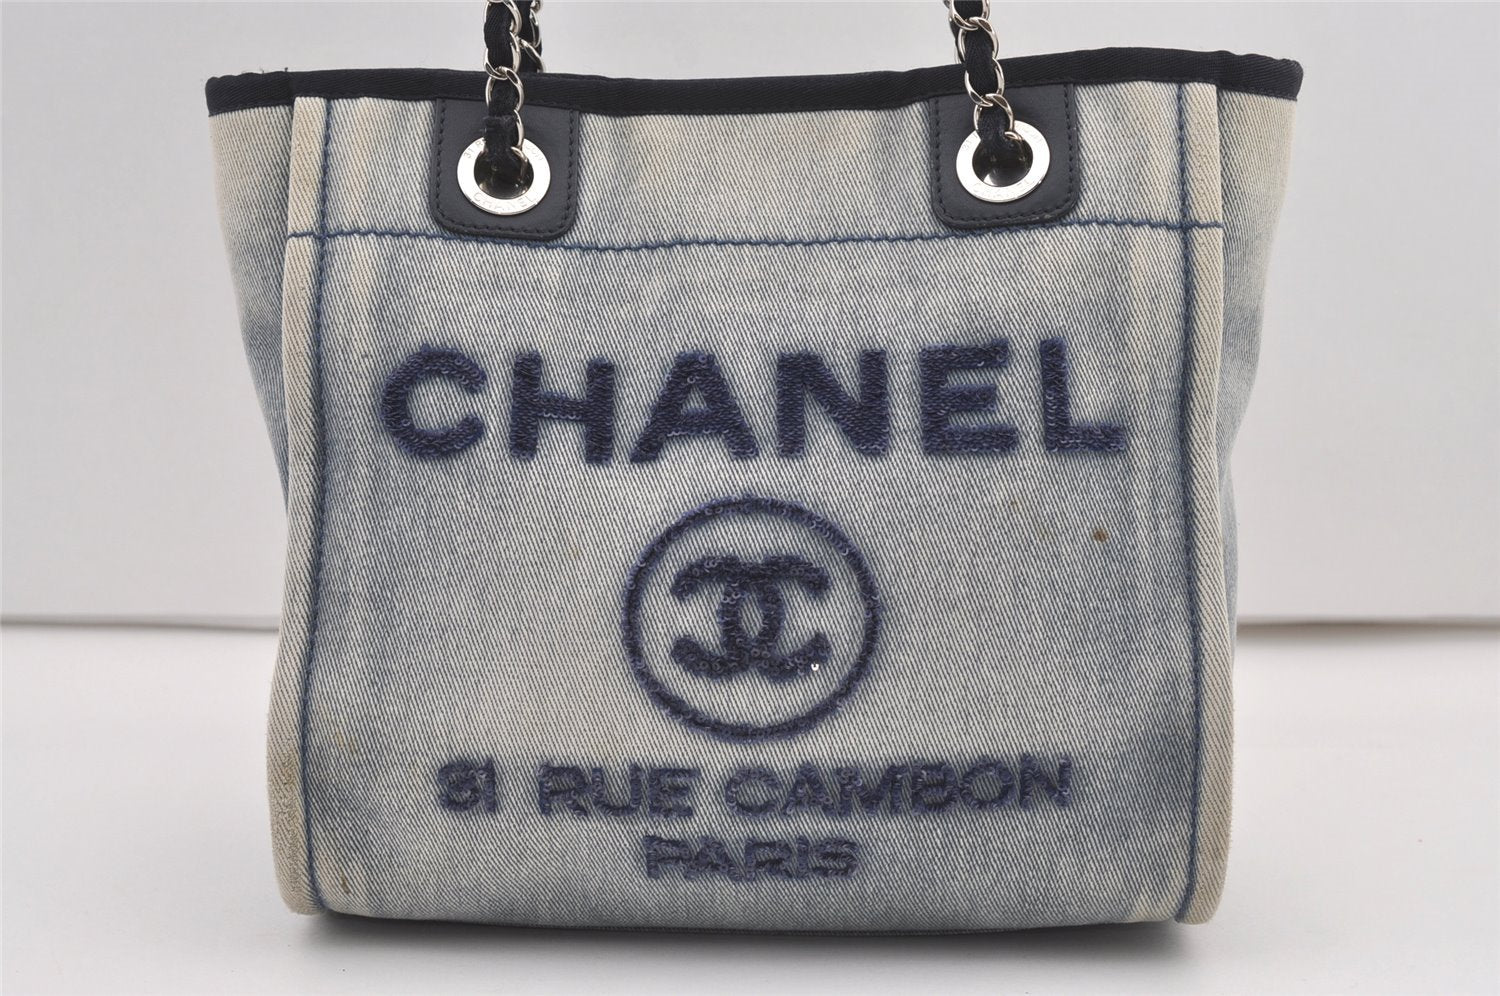 Authentic CHANEL Deauville Line CC Logo Chain Tote Bag Denim Leather Blue 0281J